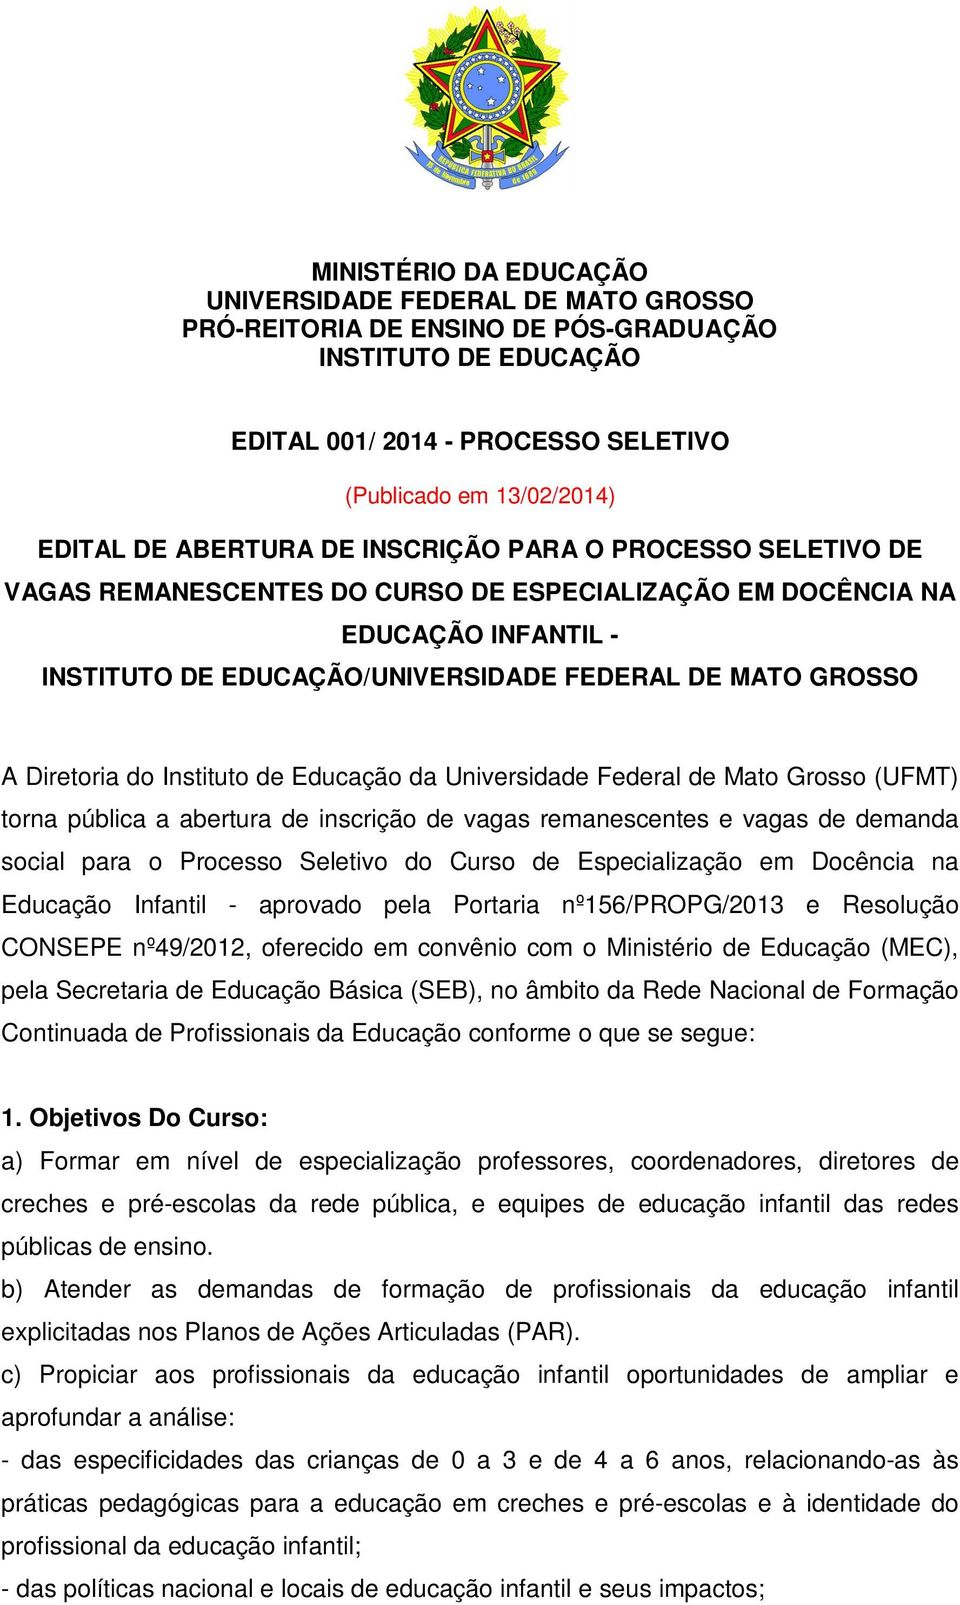 Diretoria do Instituto de Educação da Universidade Federal de Mato Grosso (UFMT) torna pública a abertura de inscrição de vagas remanescentes e vagas de demanda social para o Processo Seletivo do